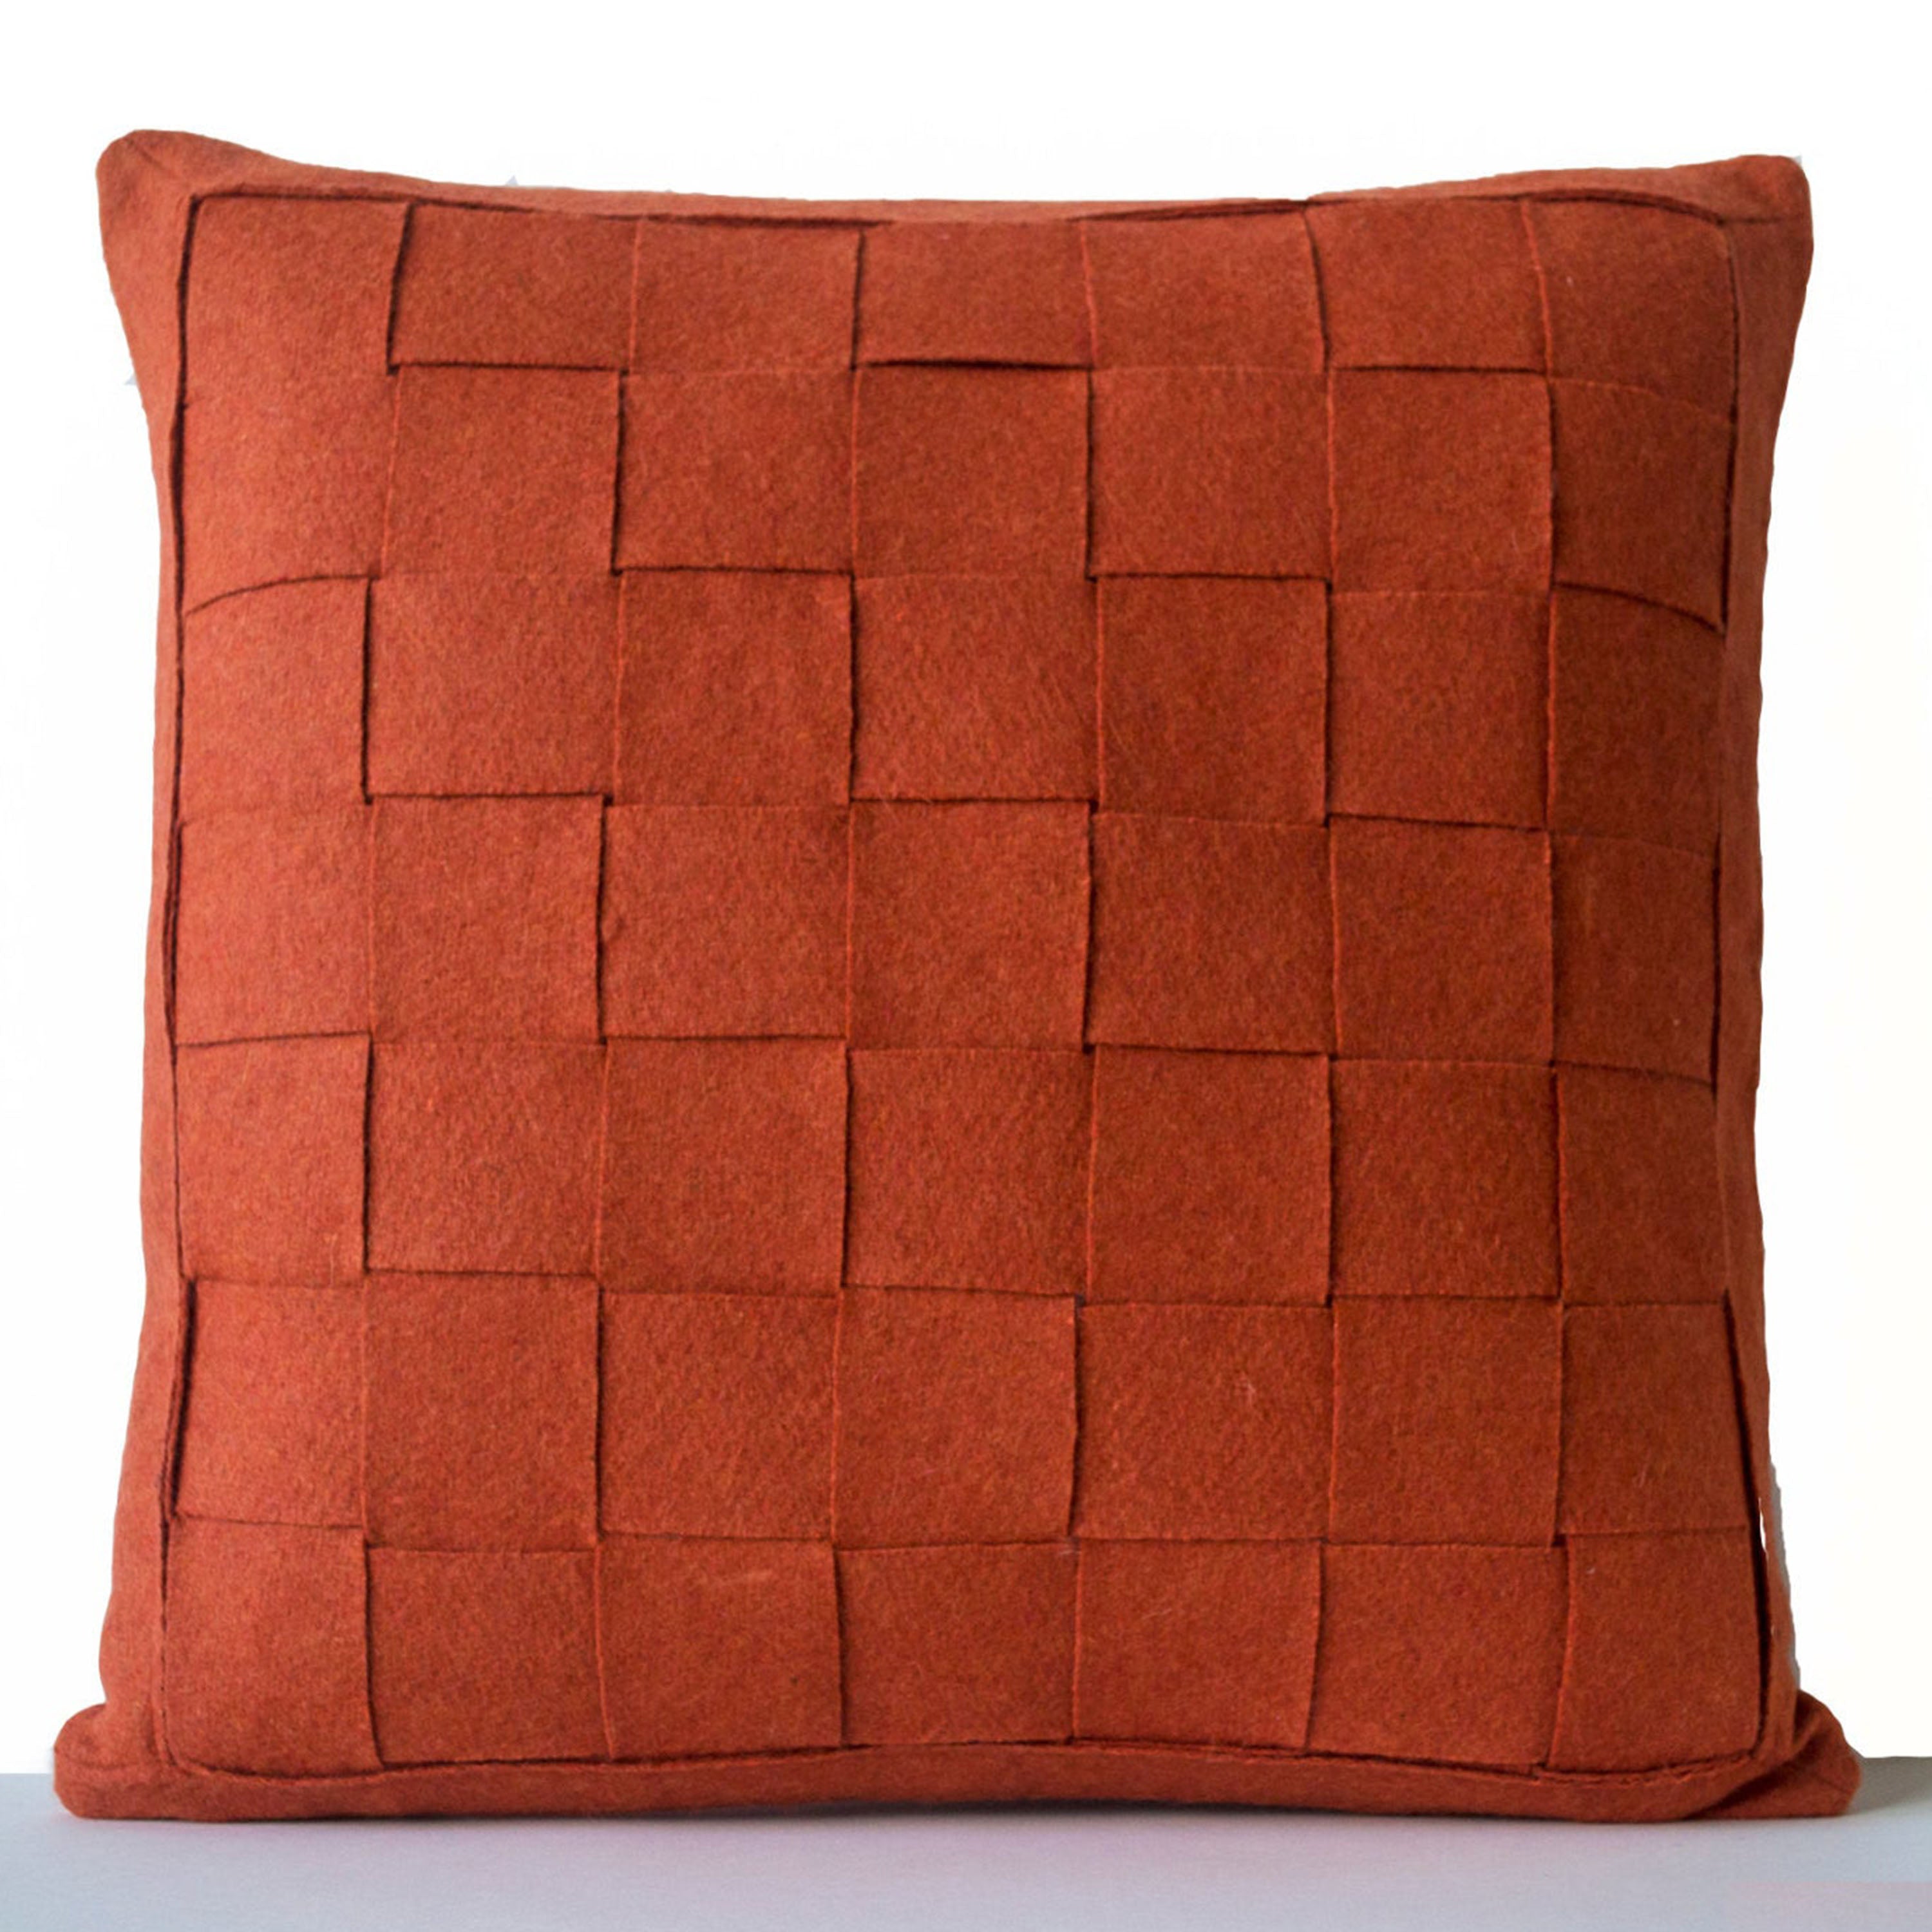 Orange Pillow - Felt Weave Pillows -Throw Pillow- Decorative Pillow- Gift- 16x16 -Square Pillow -Modern decor -Chair Pillow -Wool Mat pillow